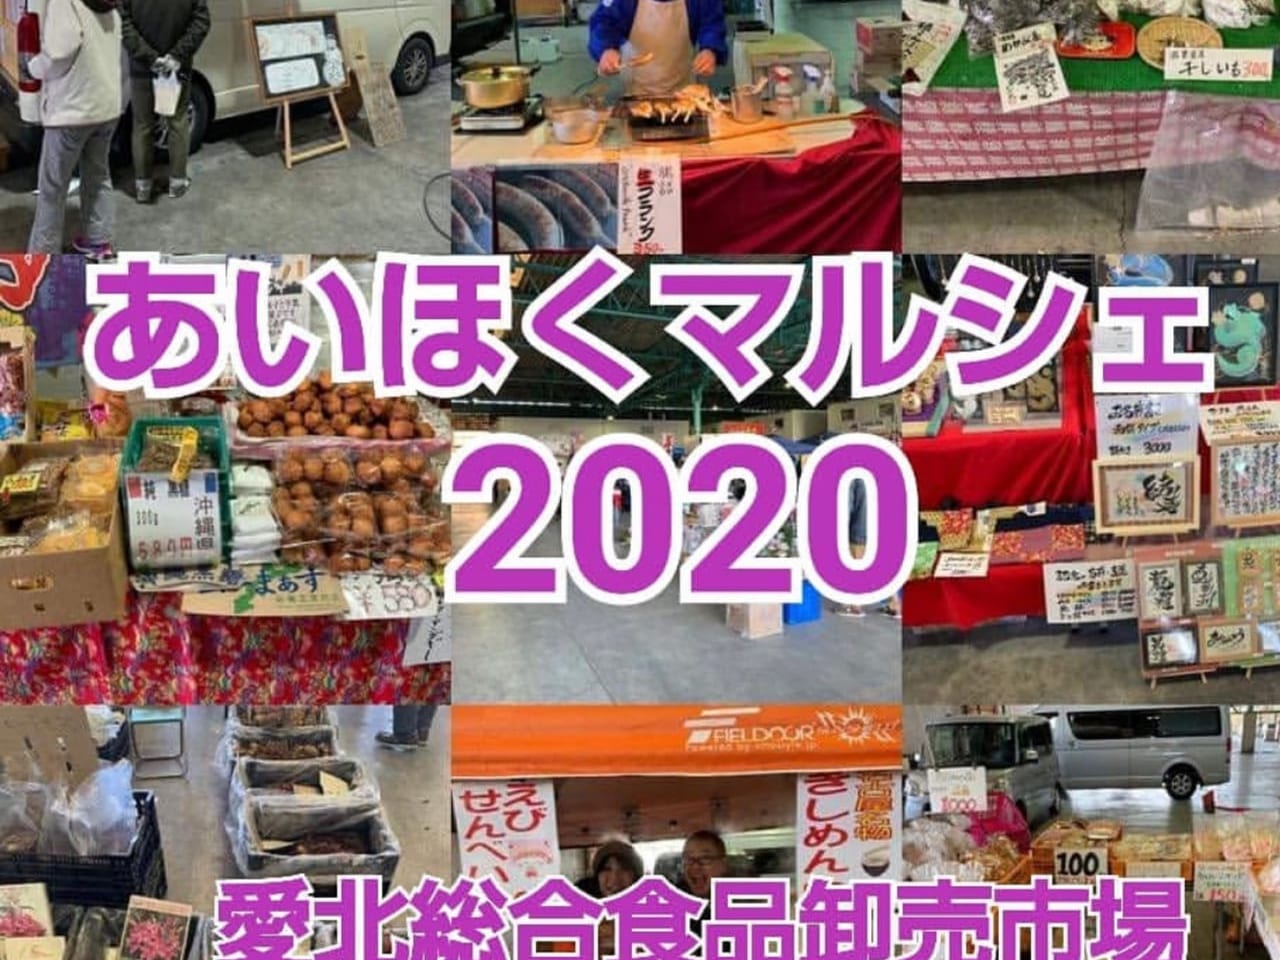 愛北総合食品卸売市場で開催される『あいほくマルシェ』